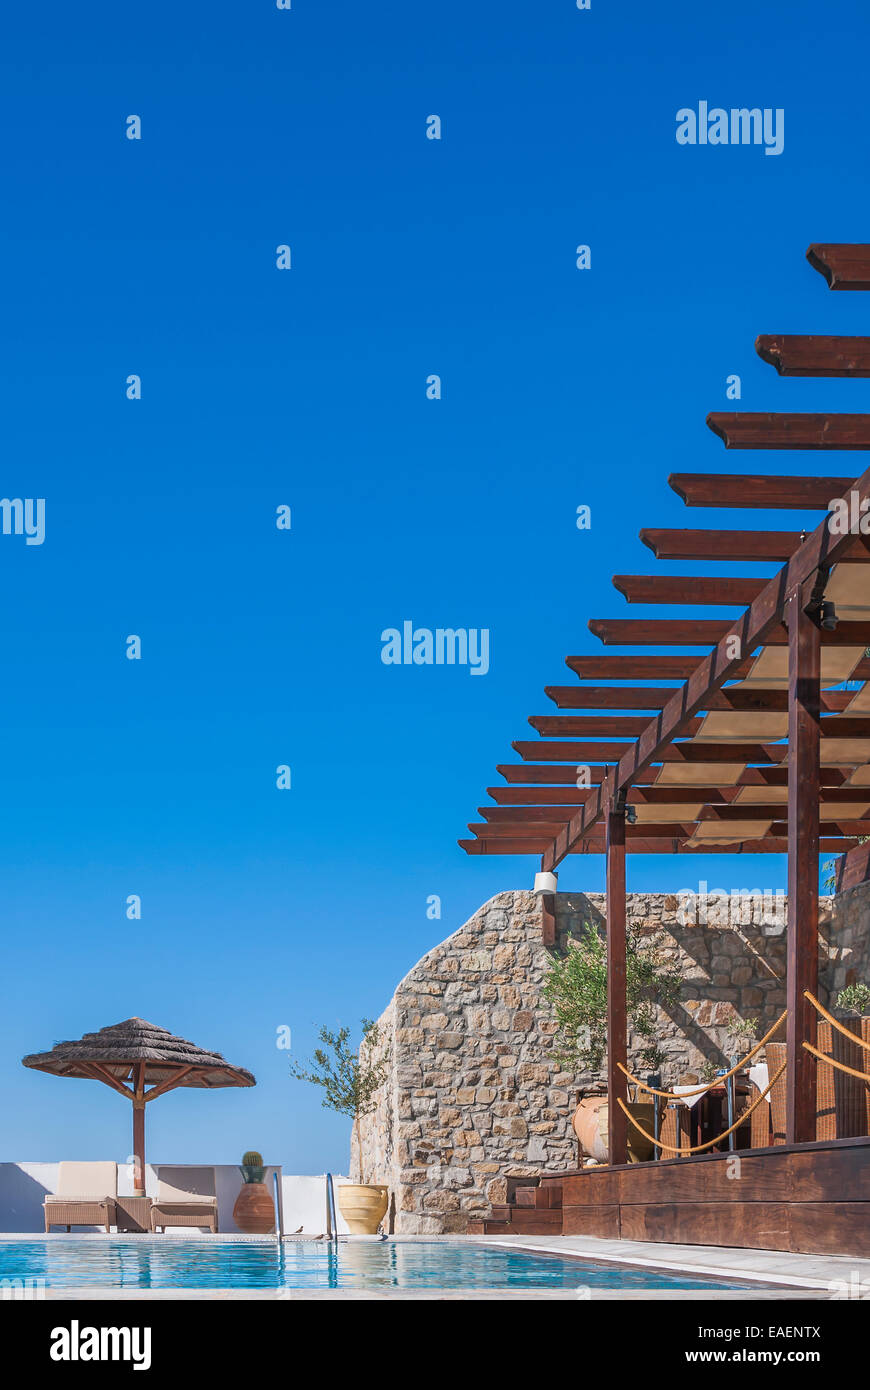 Ein Blick über einen Infinity-Pool in einem mediterranen Stil Luxus Hotel Resort, umrahmt von einem klaren blauen Himmel. Stockfoto